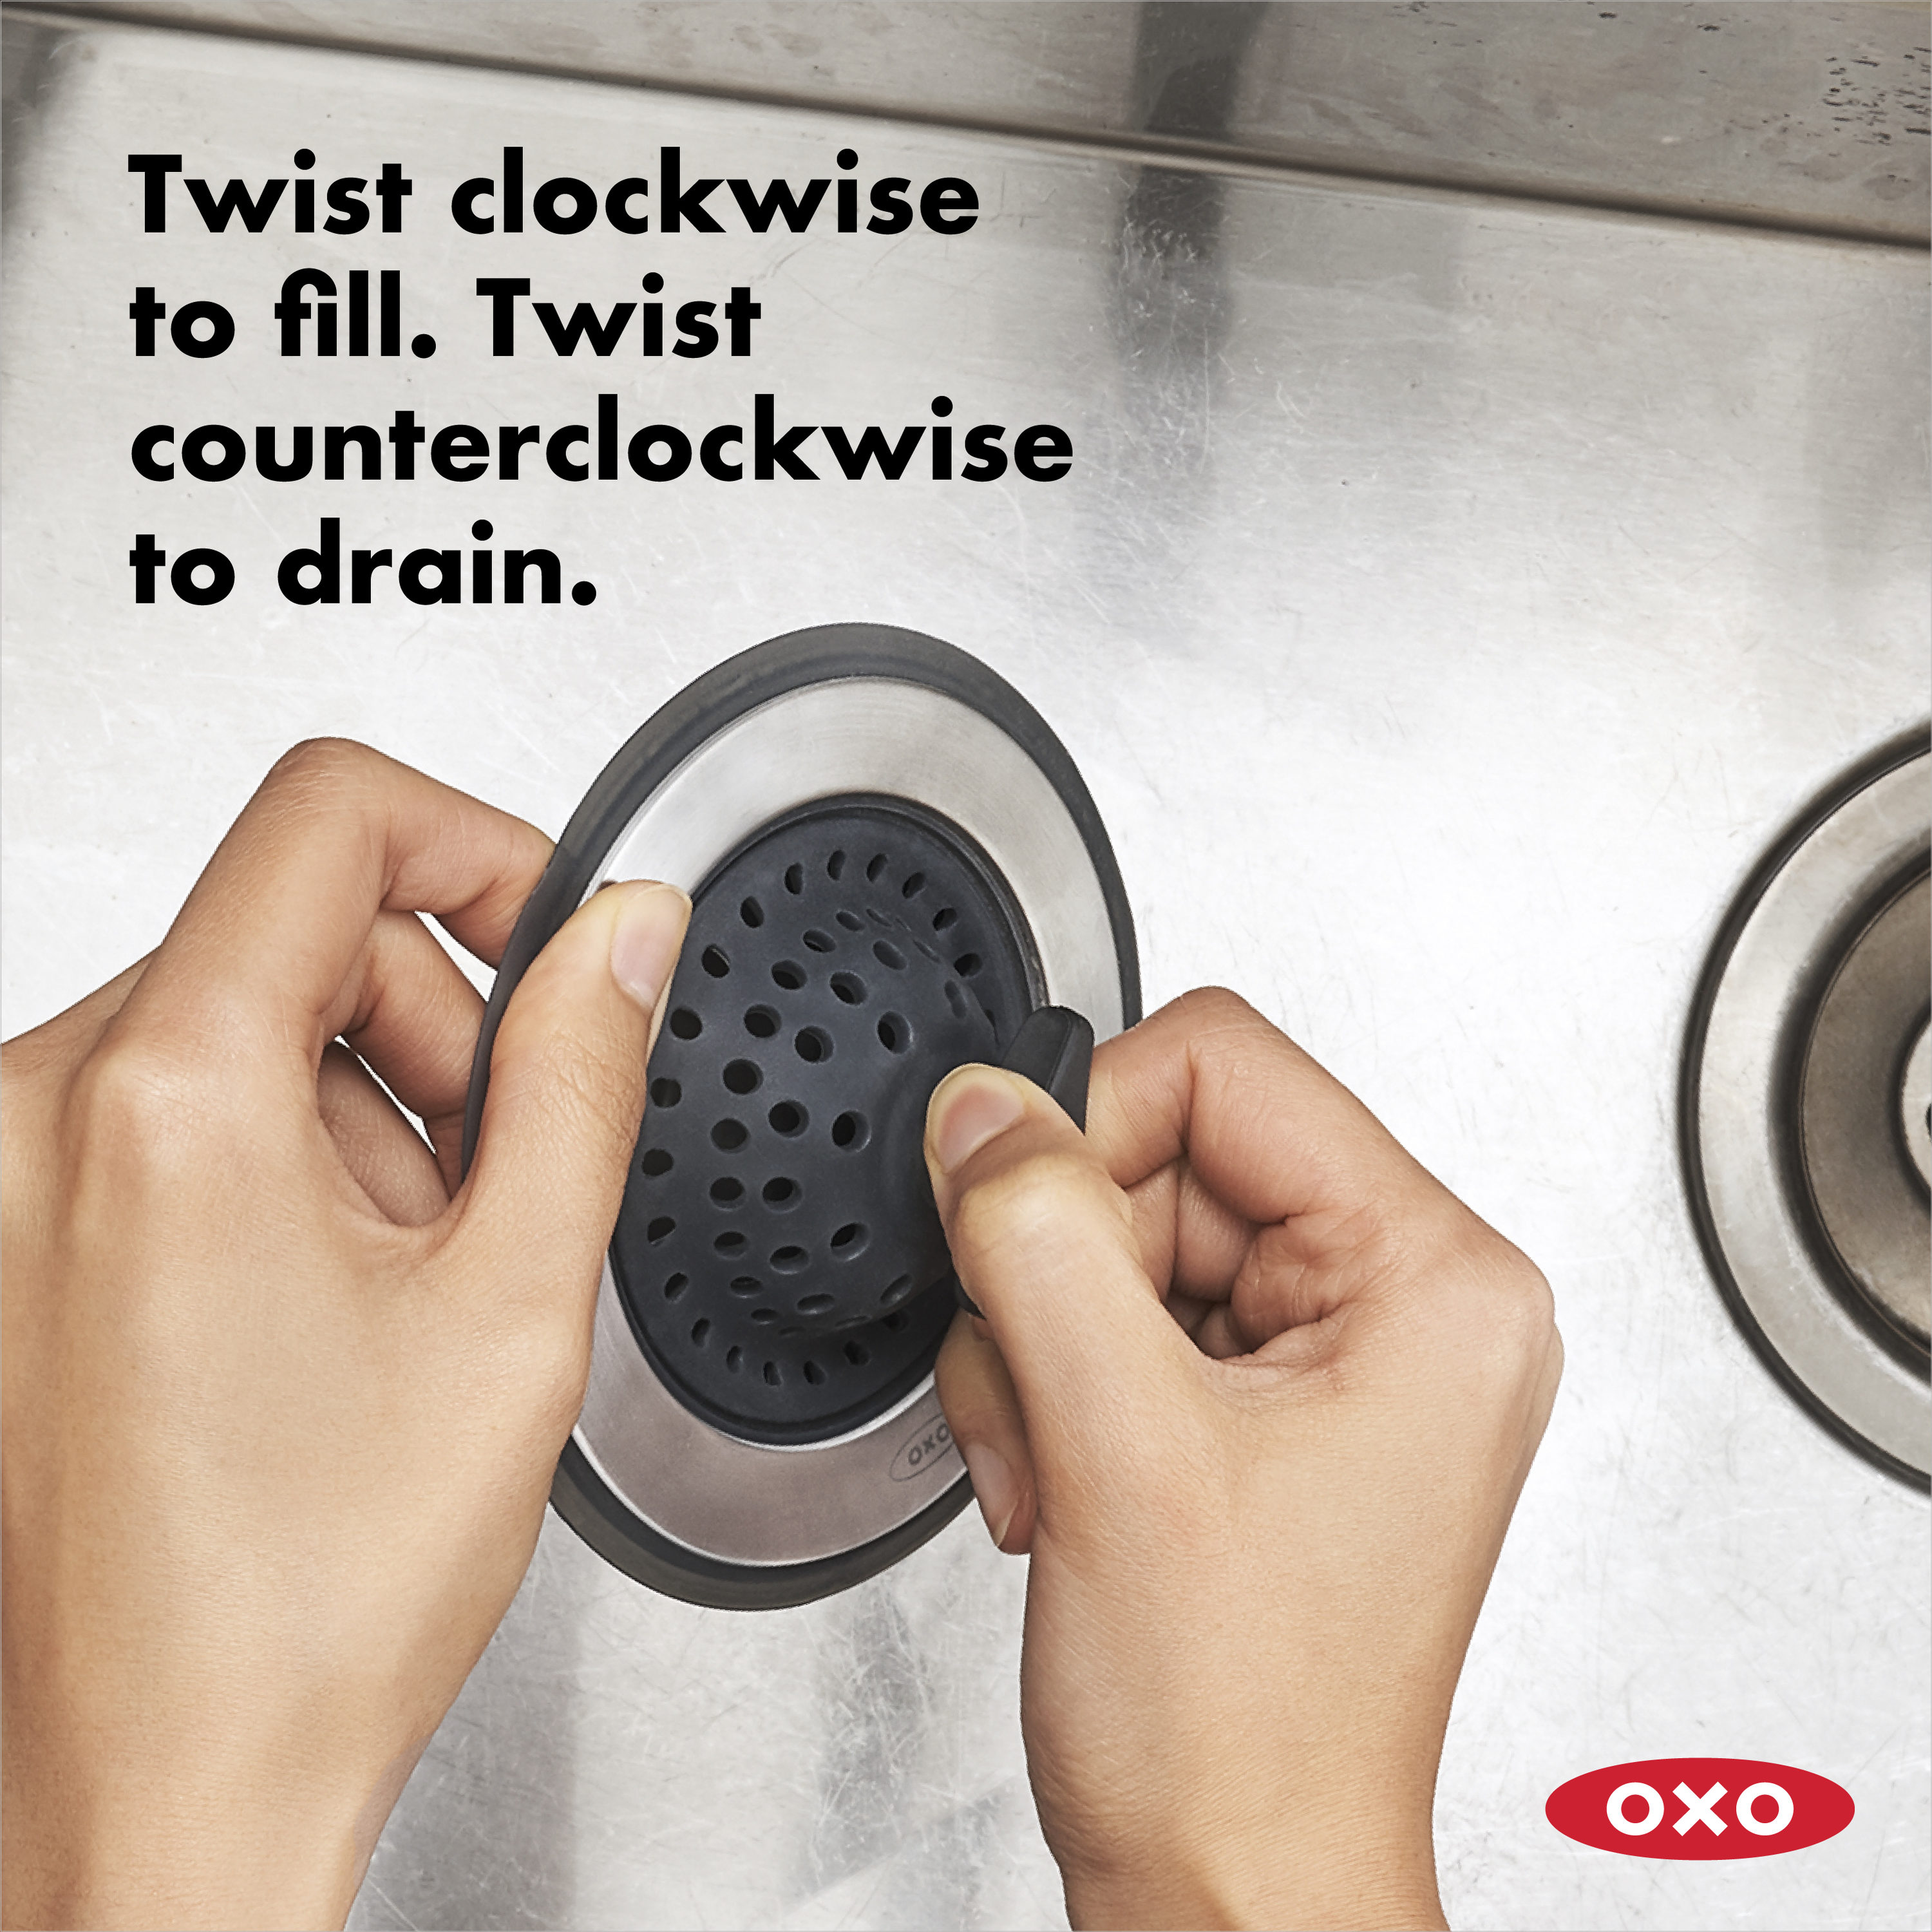 OXO Good Grips Satin Nickel Stainless Steel Kitchen Sink Strainer